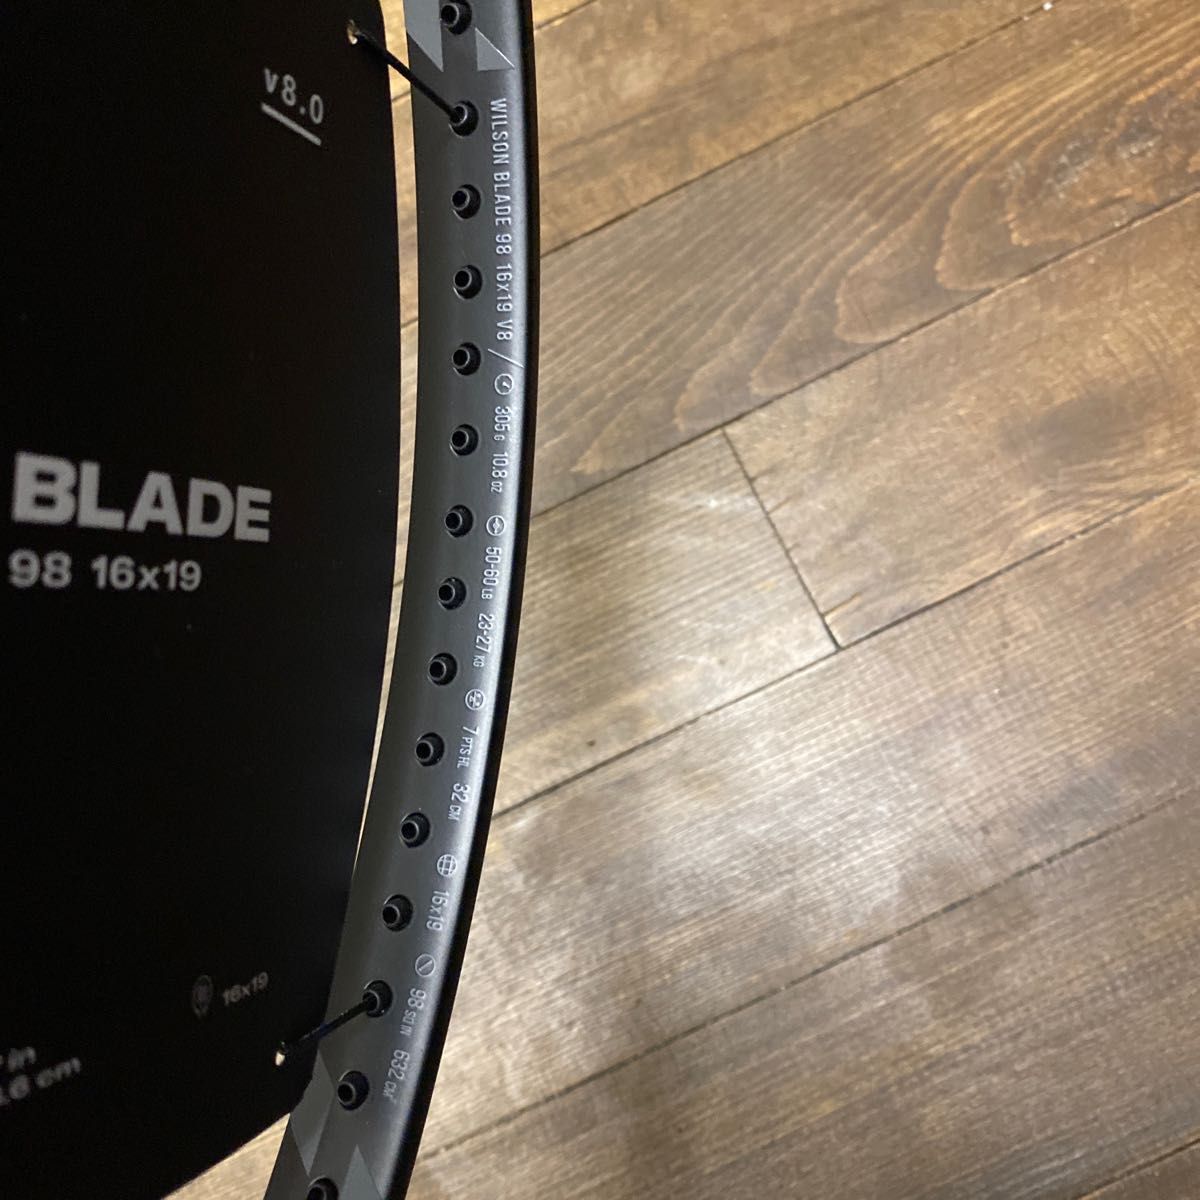 Blade ブレード 98 16×19 ナイトセッション ウィルソン 限定モデル